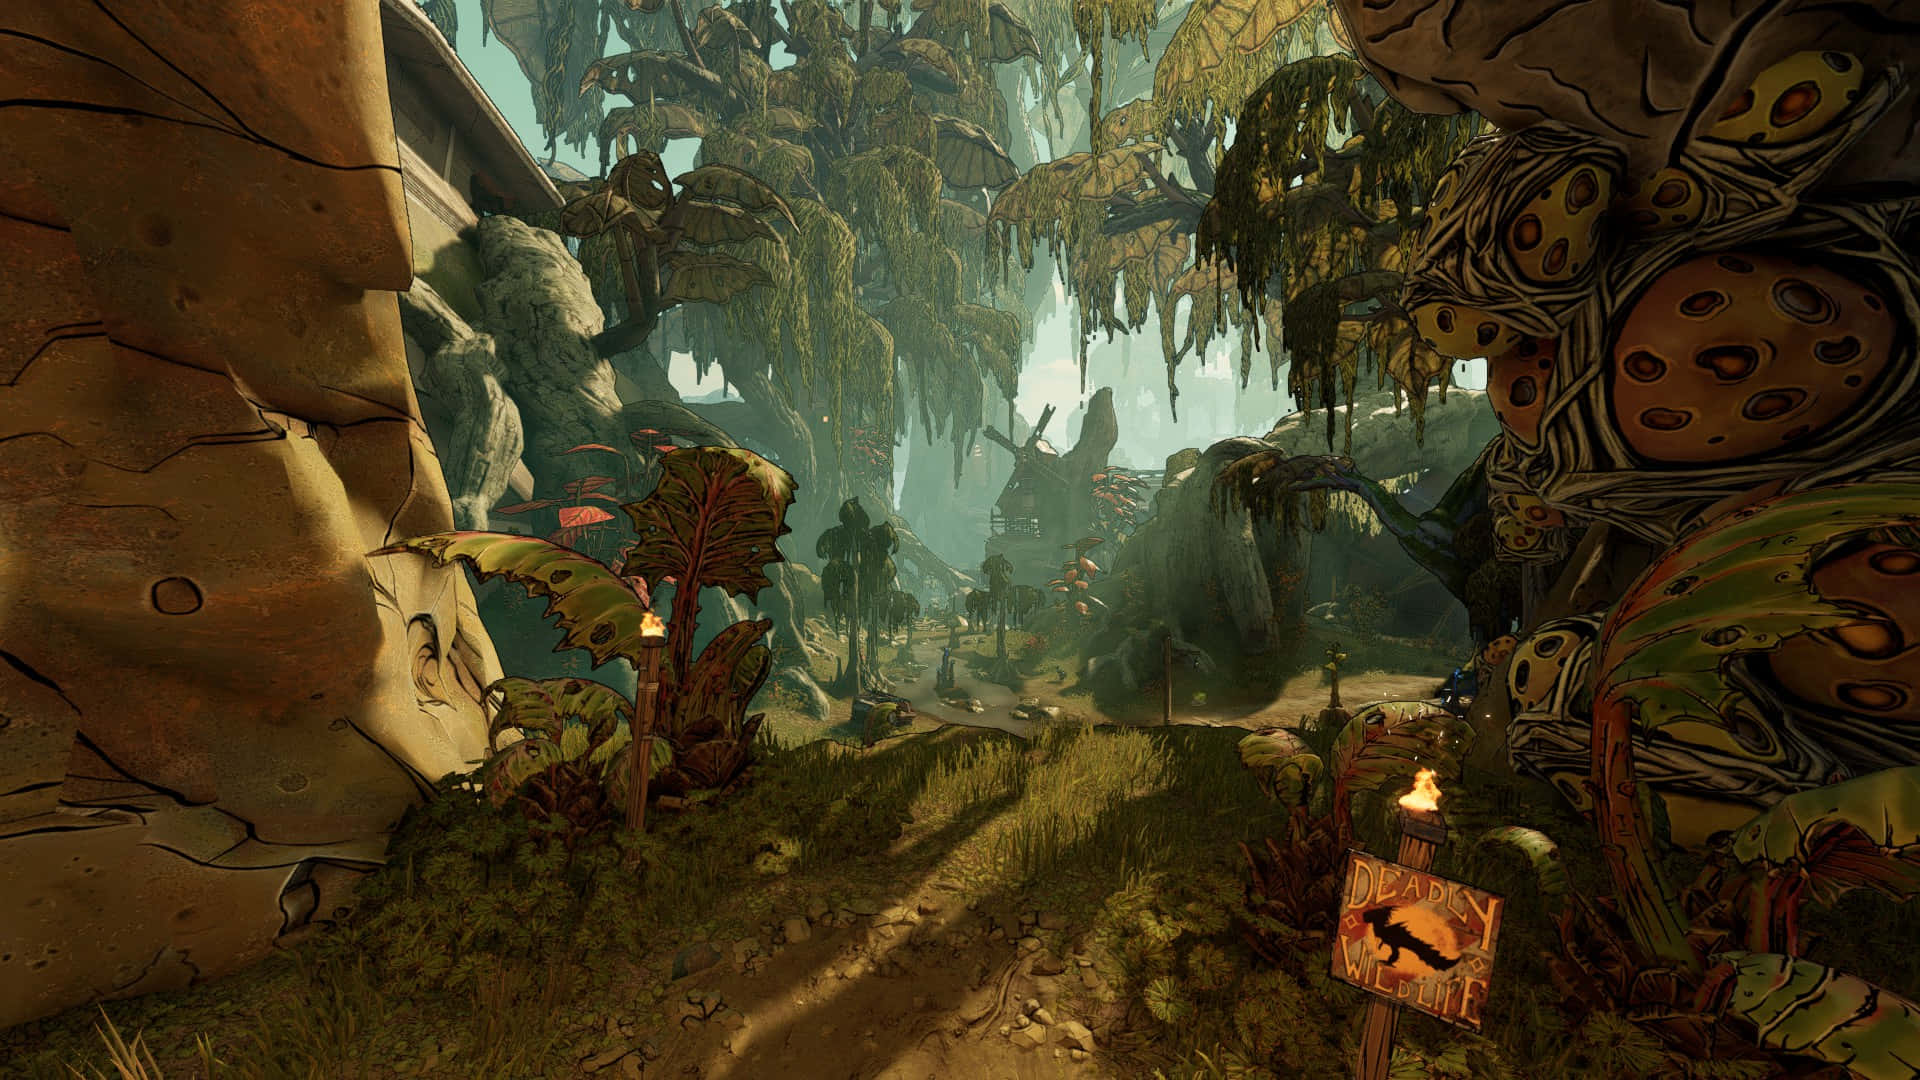 Giocaa Borderlands 3 E Preparati Per Un'avventura Piena D'azione Attraverso Le Terre Selvagge Di Pandora!